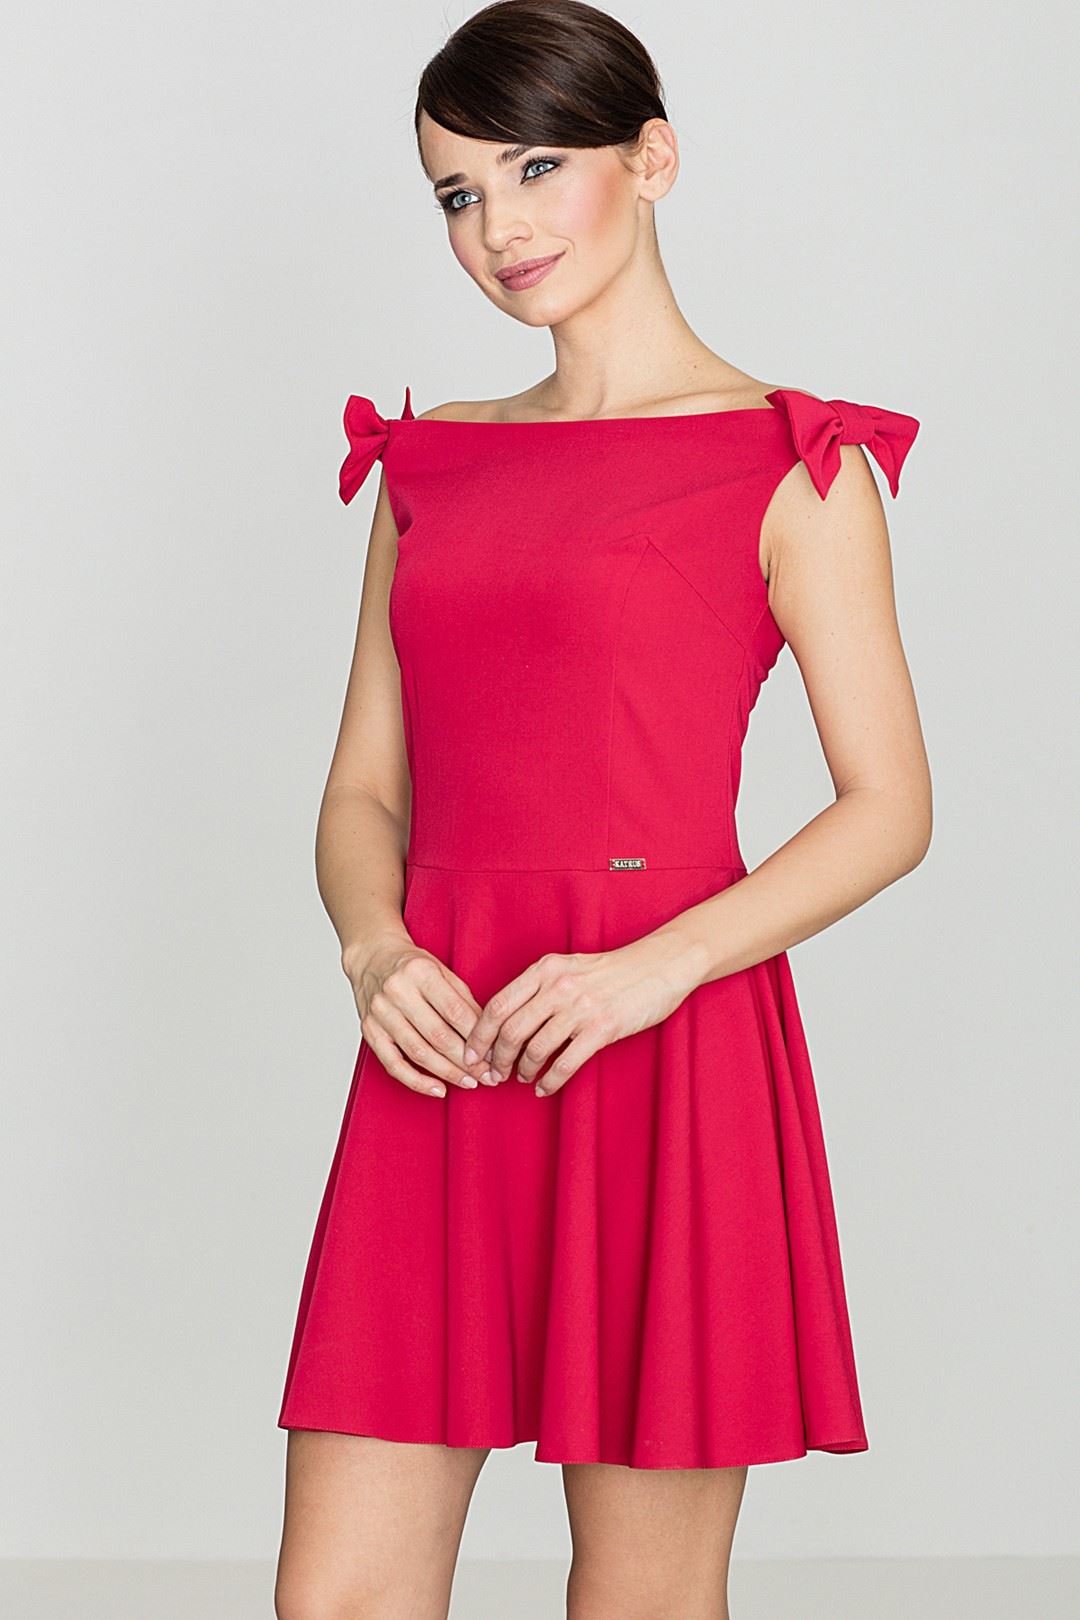 Dress K170 Red L